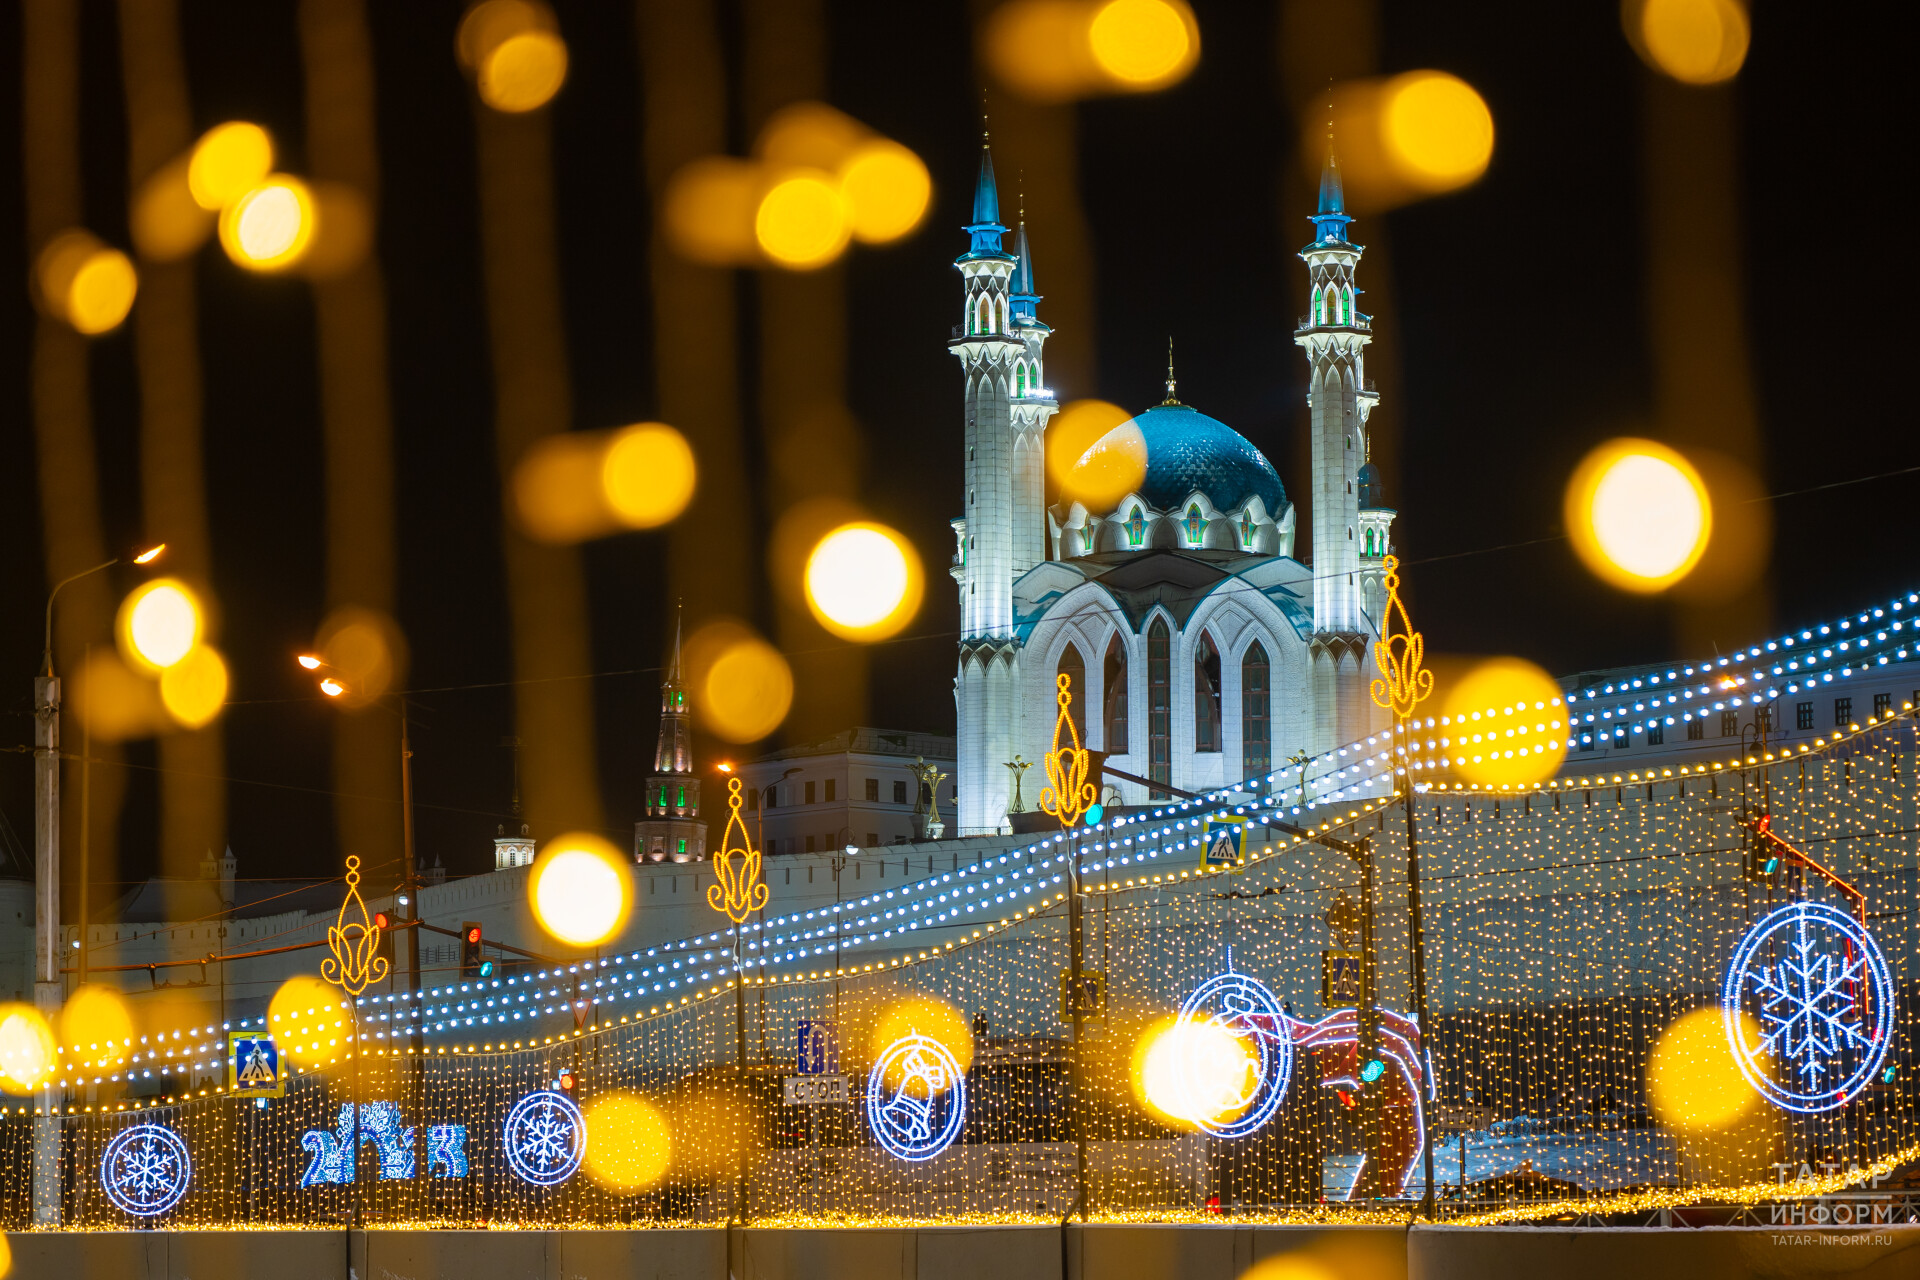 Казань вошла в топ-10 направлений по России для отдыха в зимние каникулы